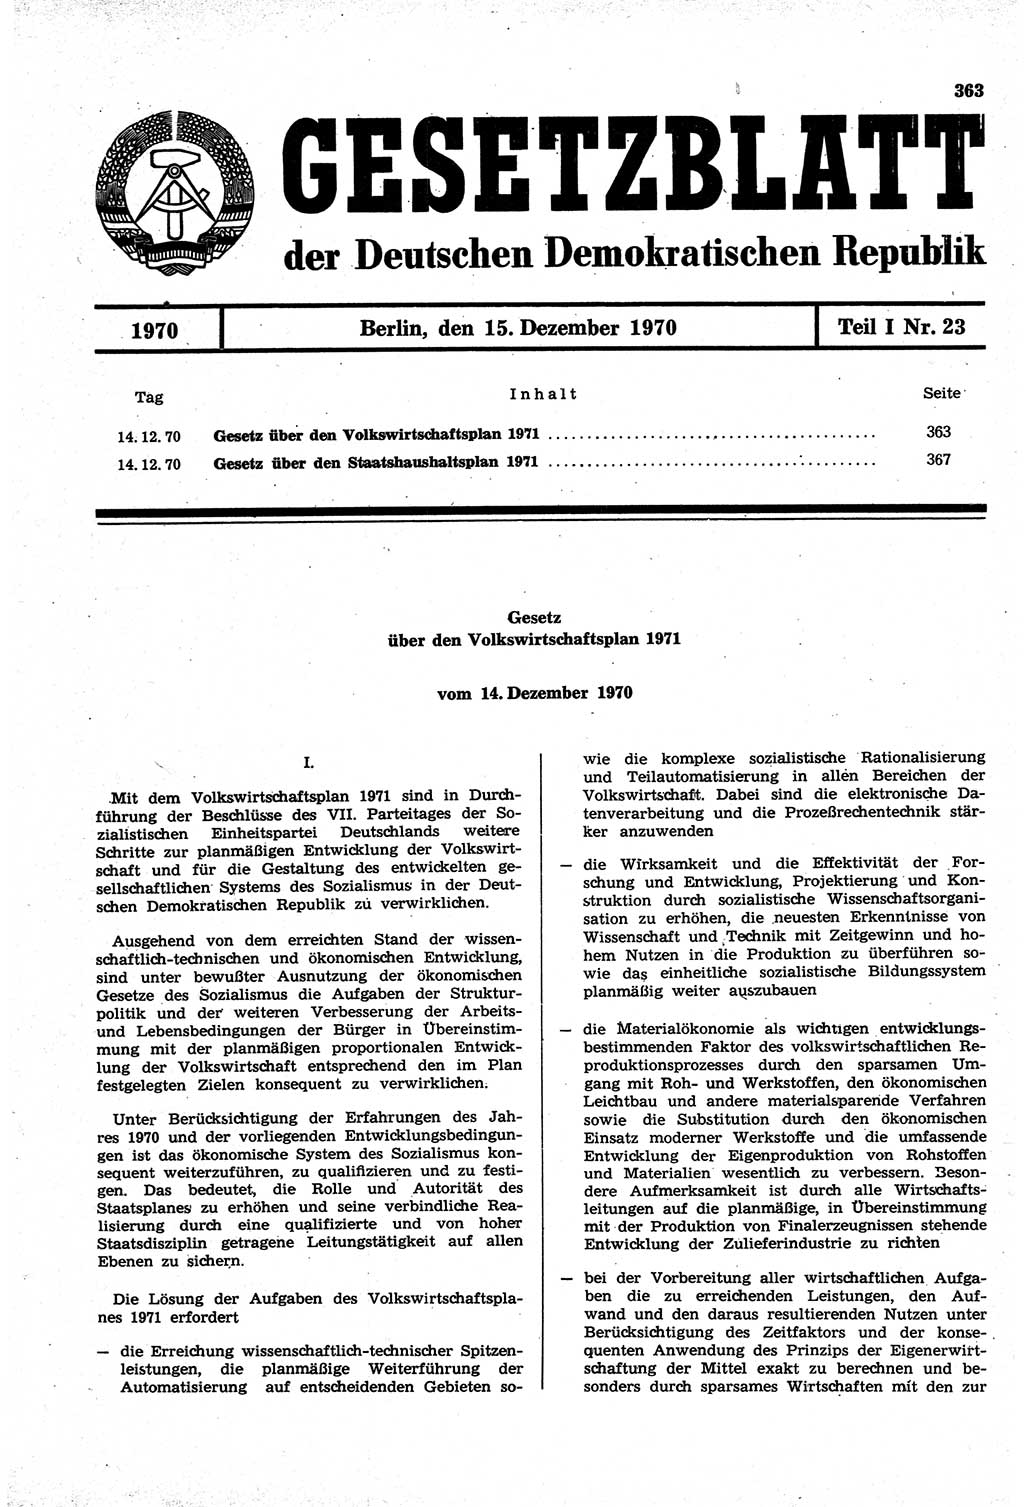 Gesetzblatt (GBl.) der Deutschen Demokratischen Republik (DDR) Teil Ⅰ 1970, Seite 363 (GBl. DDR Ⅰ 1970, S. 363)